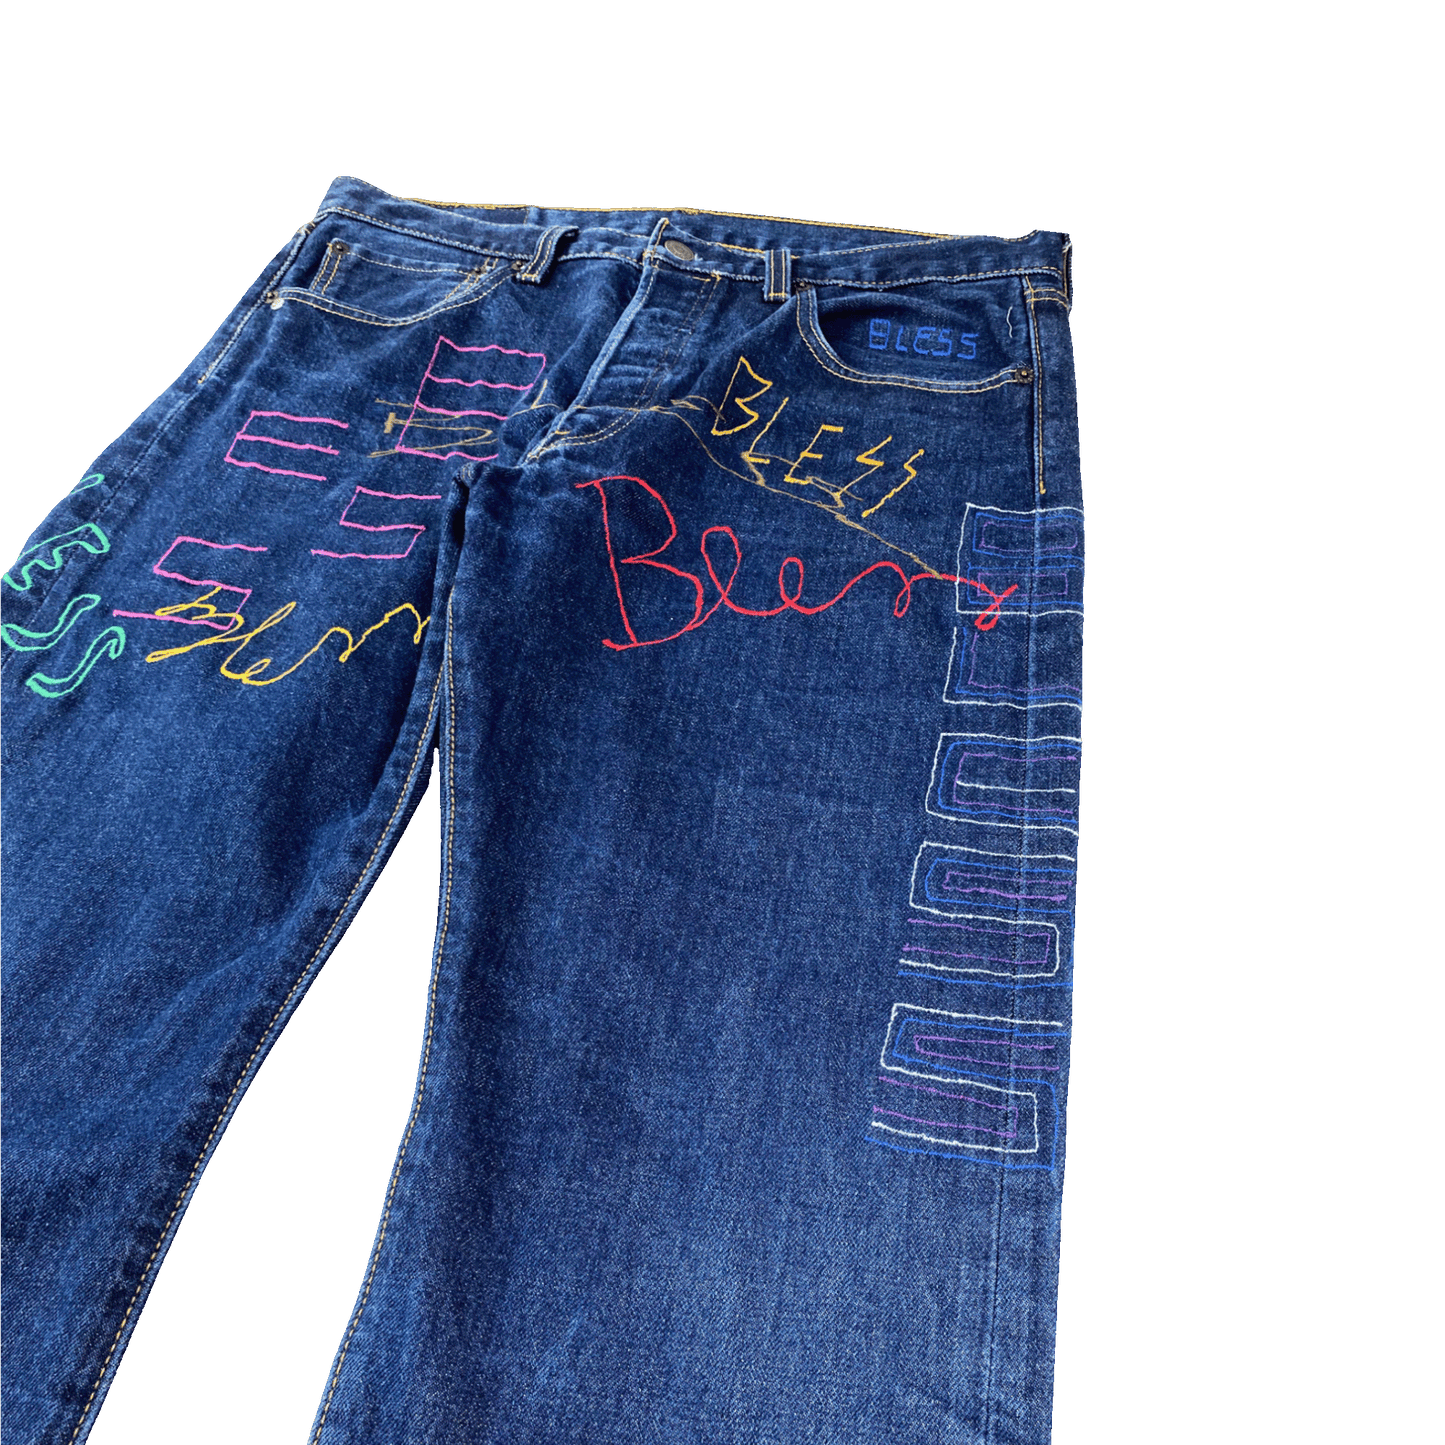 Nº71 Embroidery Jeans Vintage Levi's Denim Blue / Multicolour